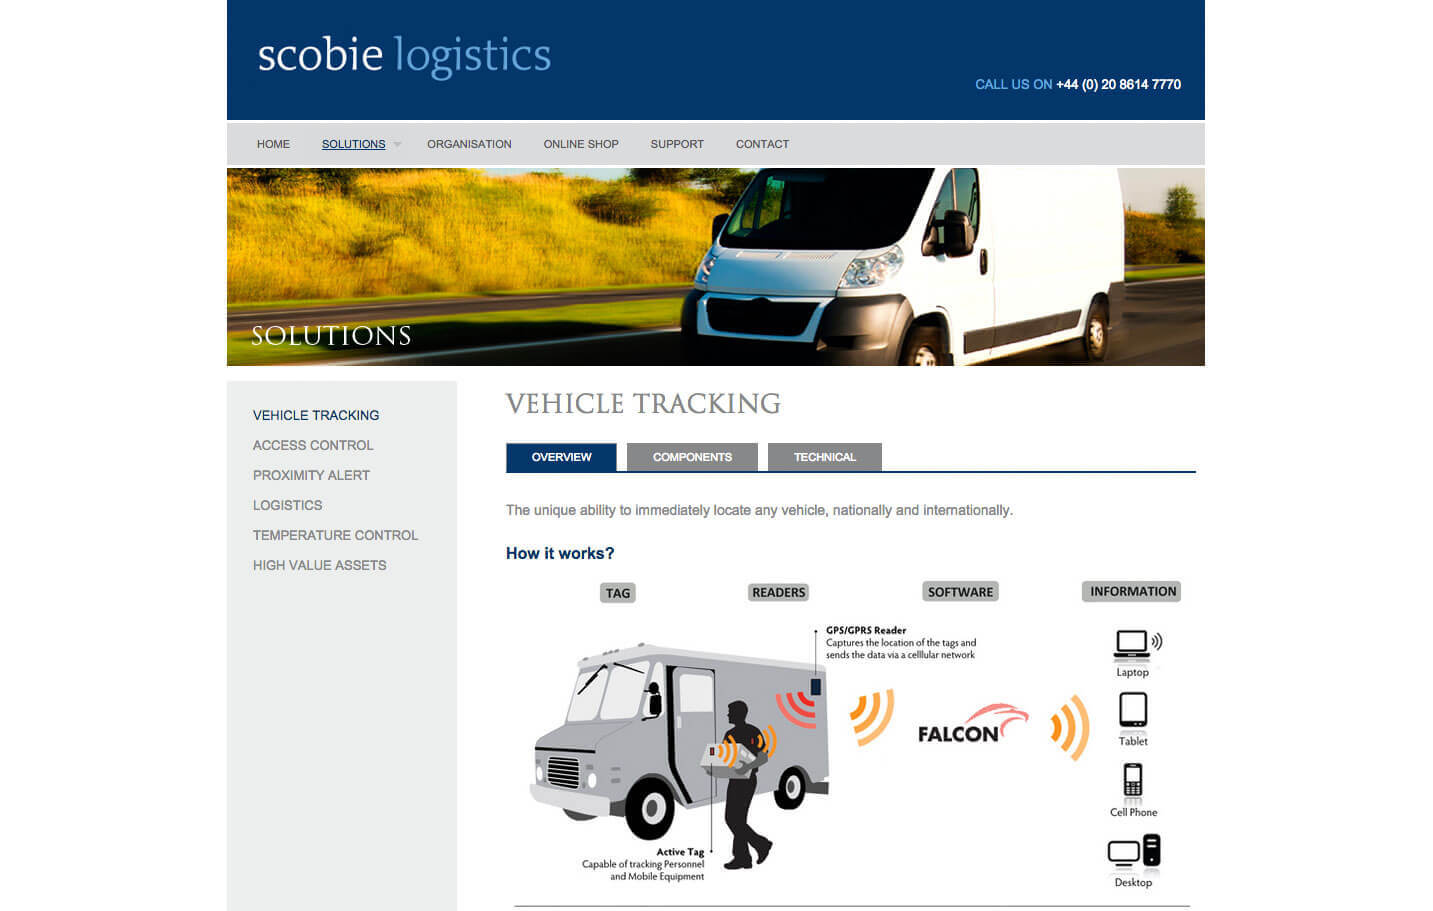 Scobie Logistics - Solutions page